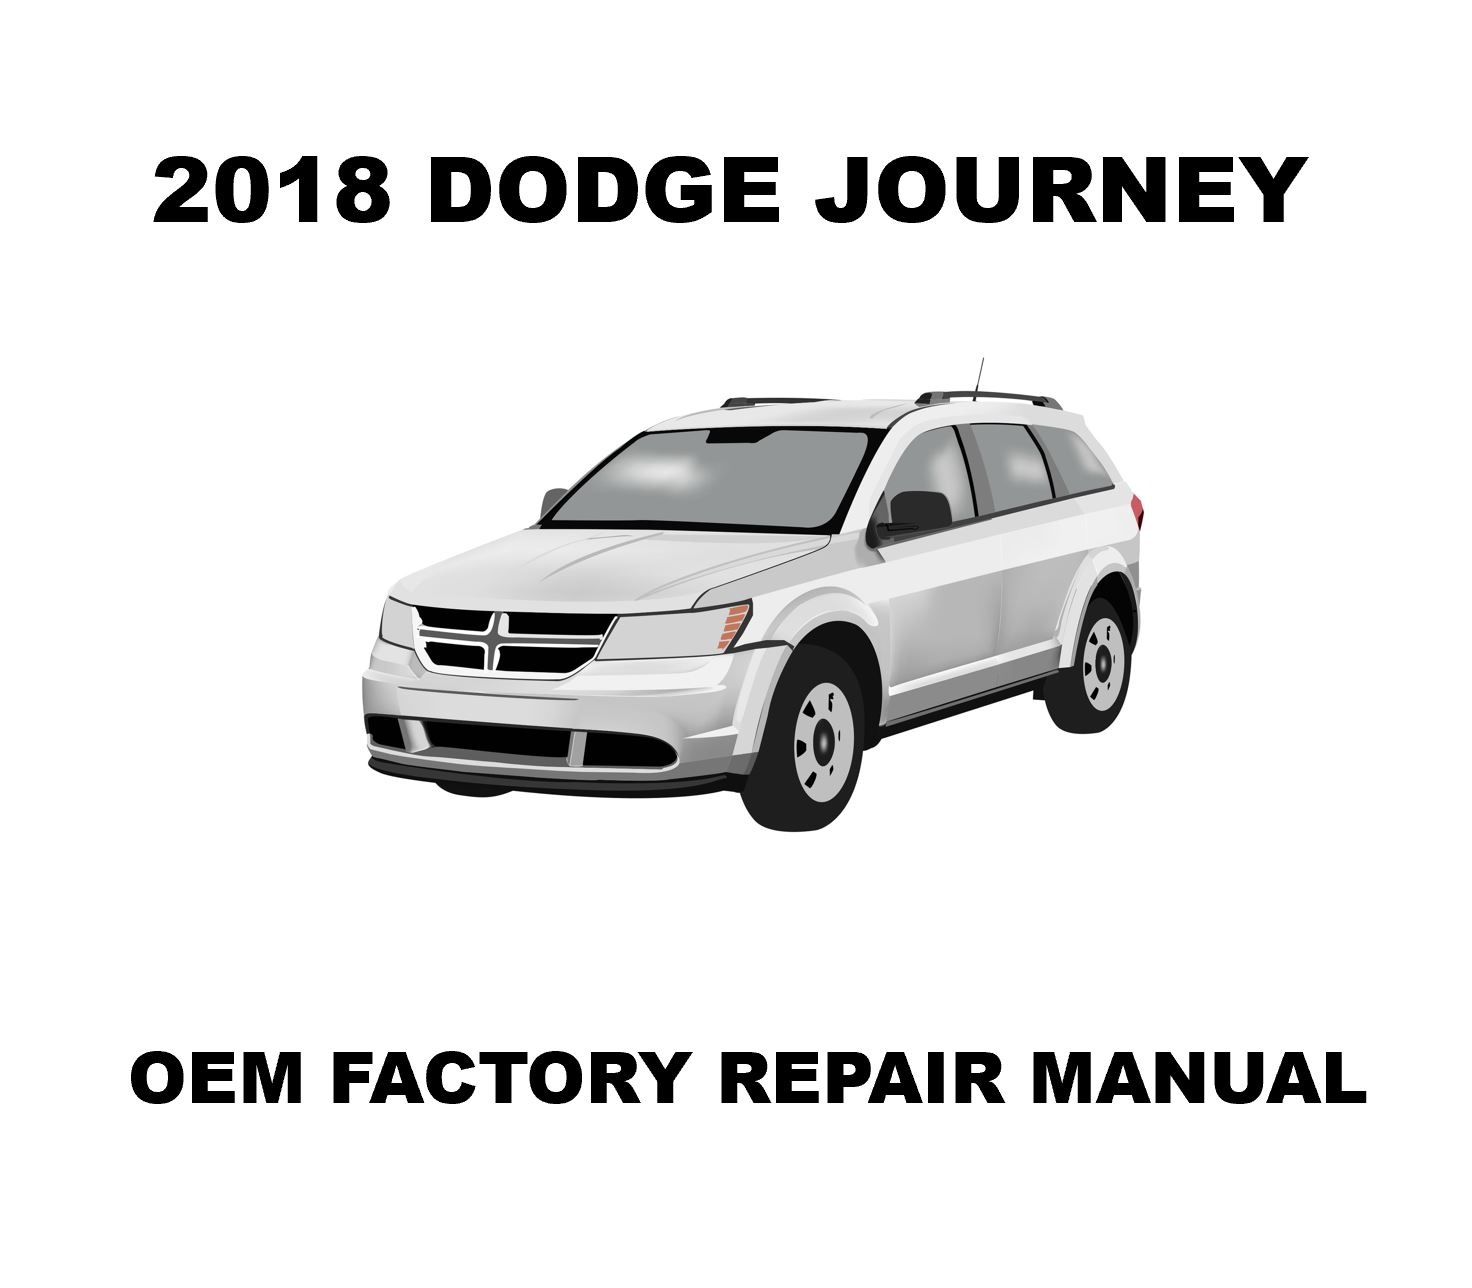 2018_dodge_journey_repair_manual_1472